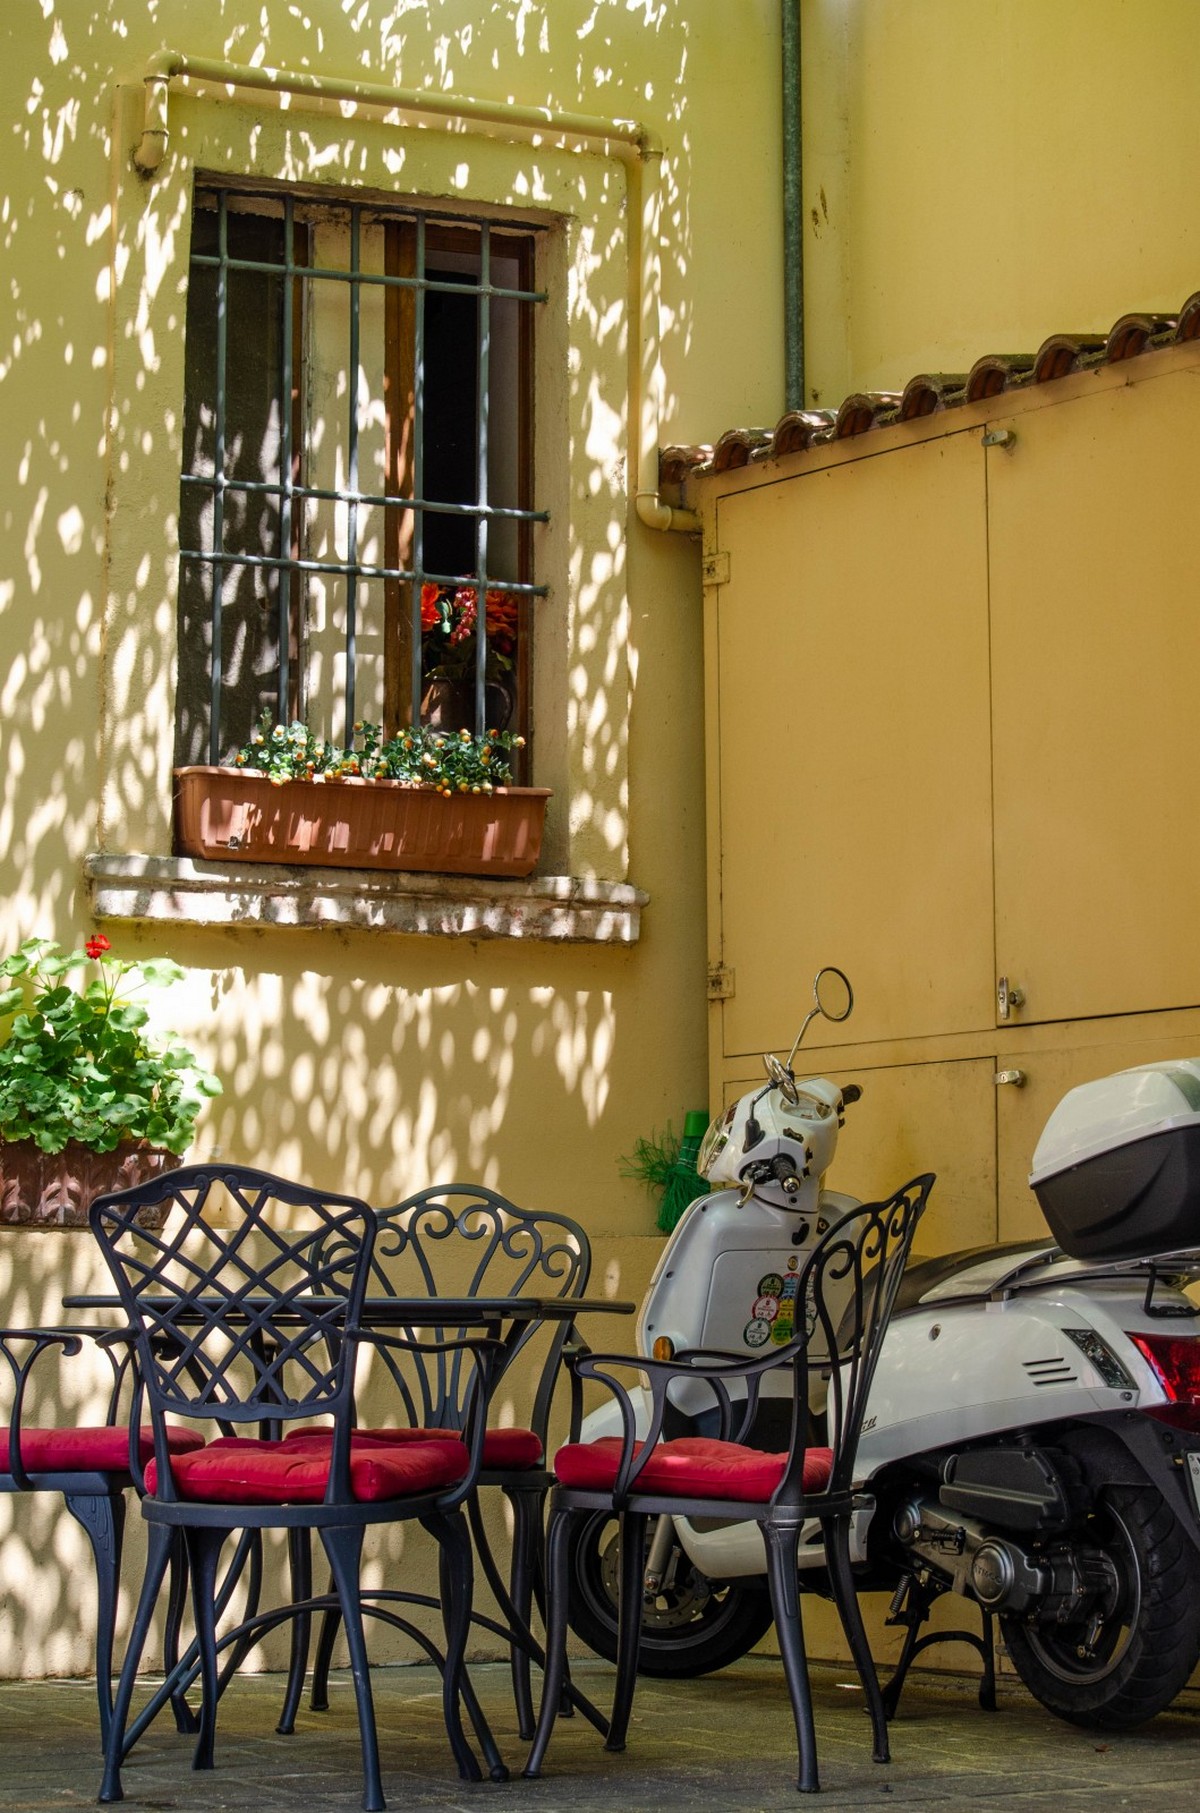 Просто кайфуй: Сирмионе — город, который учит наслаждаться жизнью Италия,Сирмионе,тревел-фото